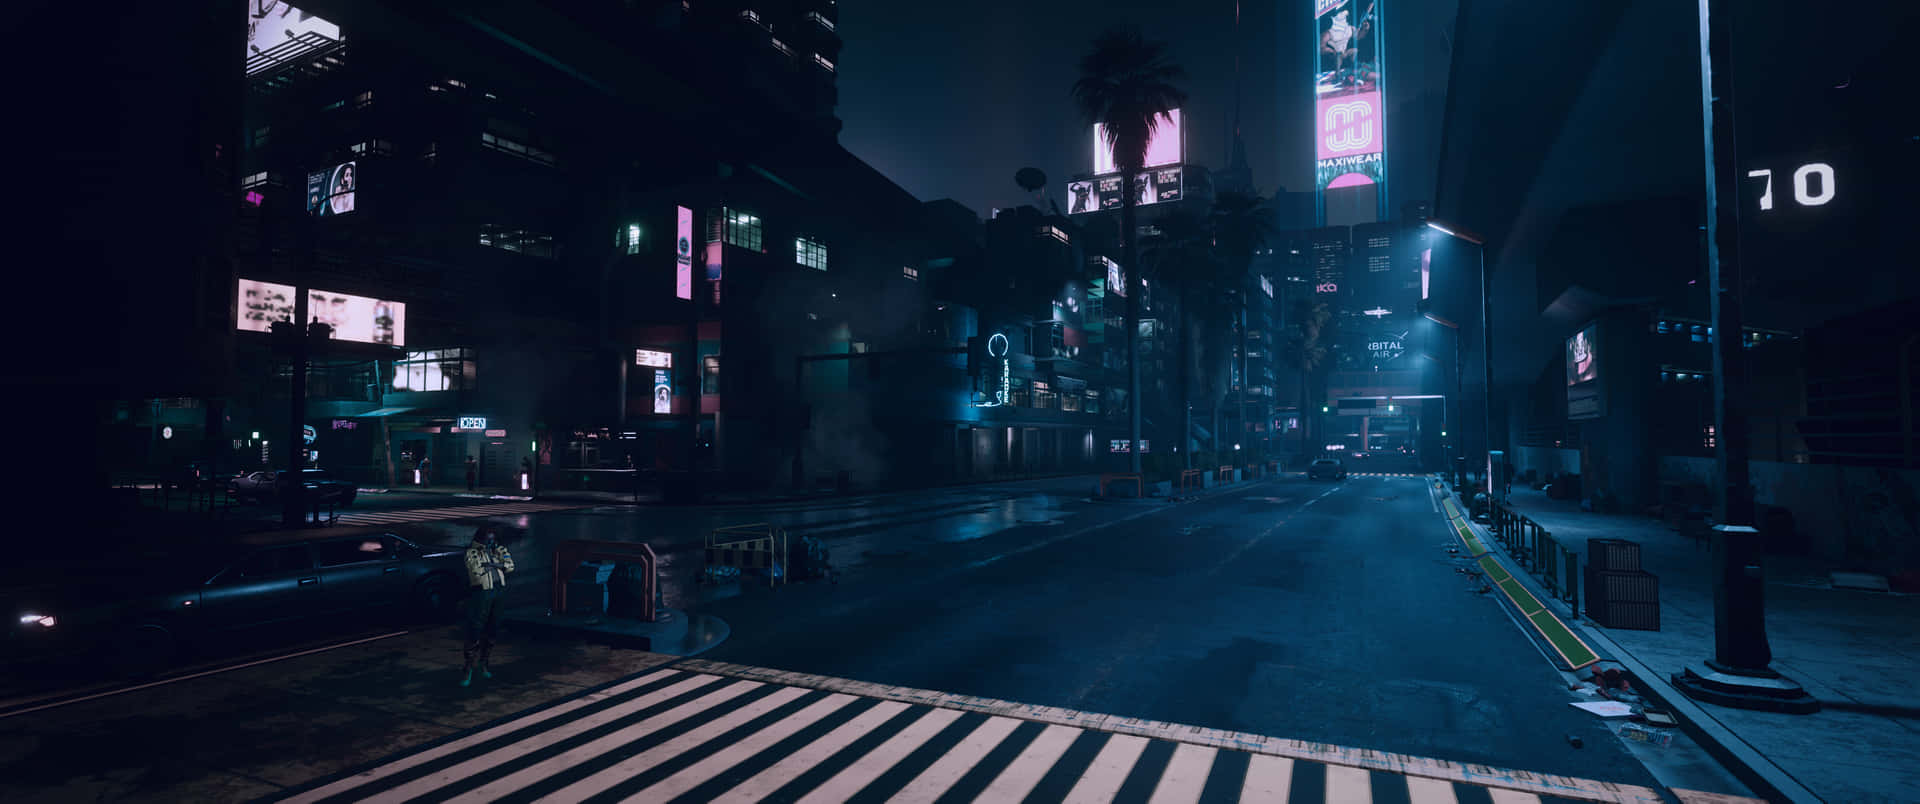 En mørk by gade med neonlys og en fodgængerovergang Wallpaper